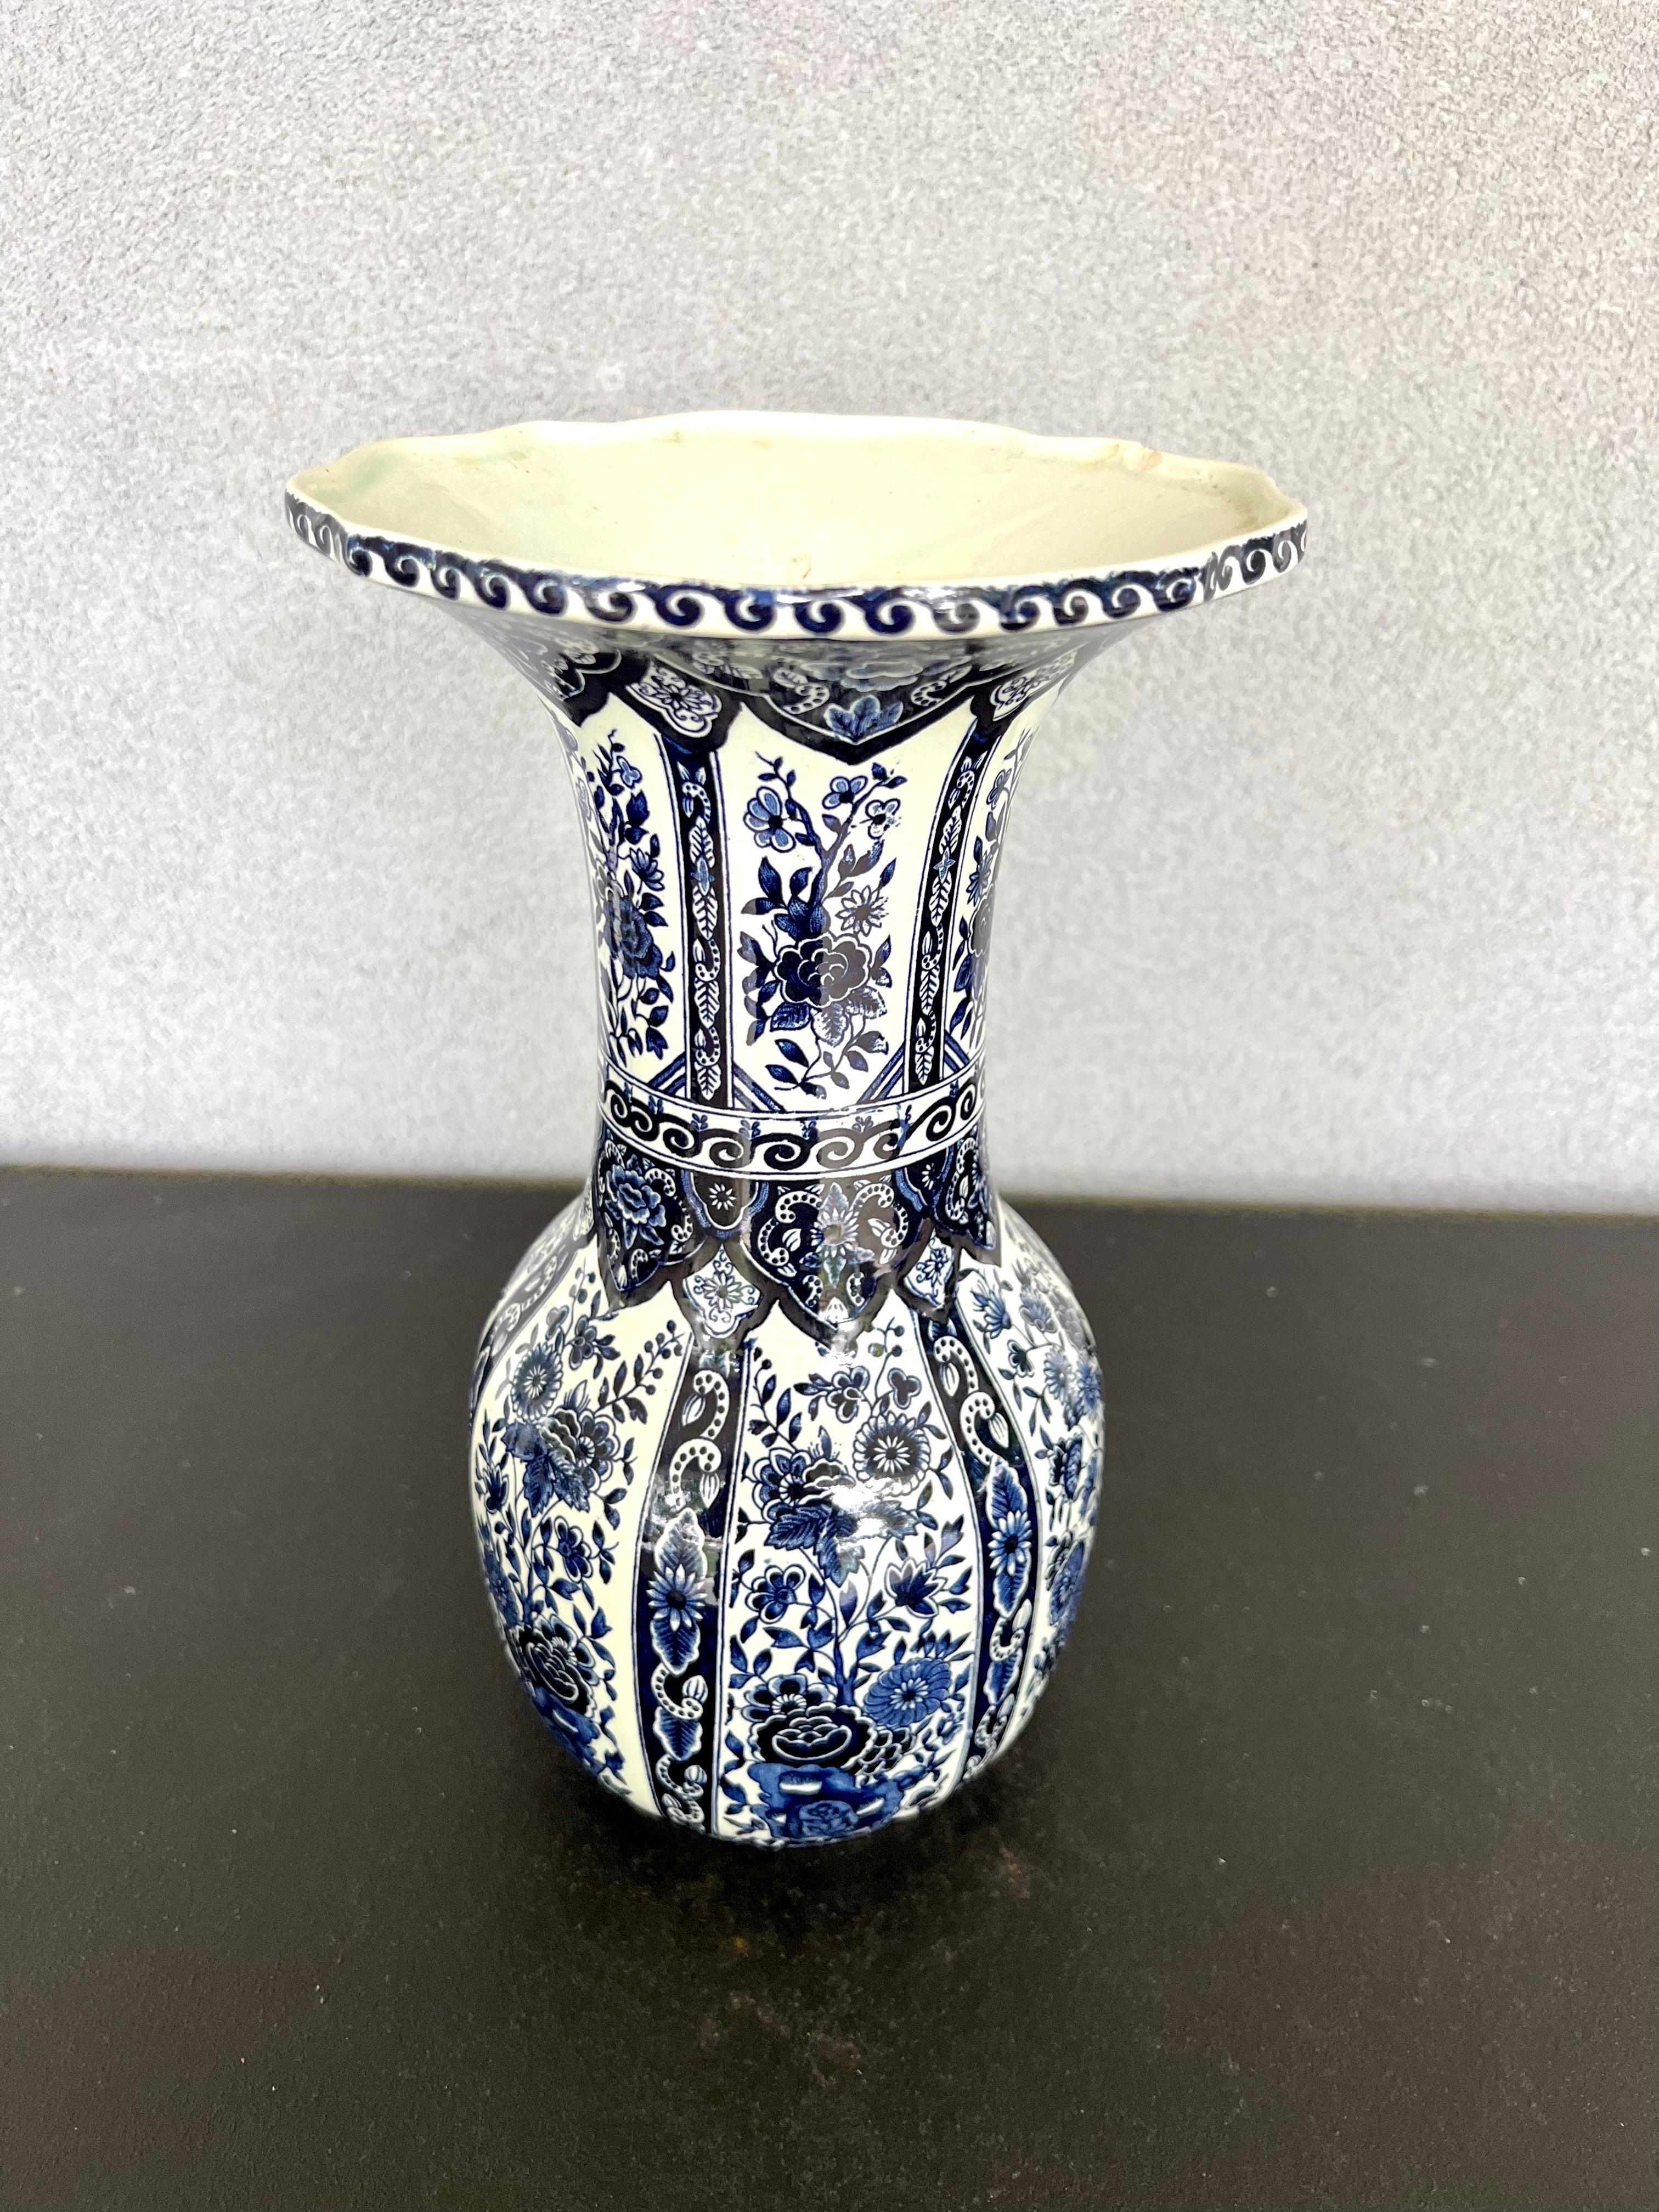 Porcelain Vintage Belgium Delft Blue & White Vase by Boch for Royal Sphinx Holland For Sale